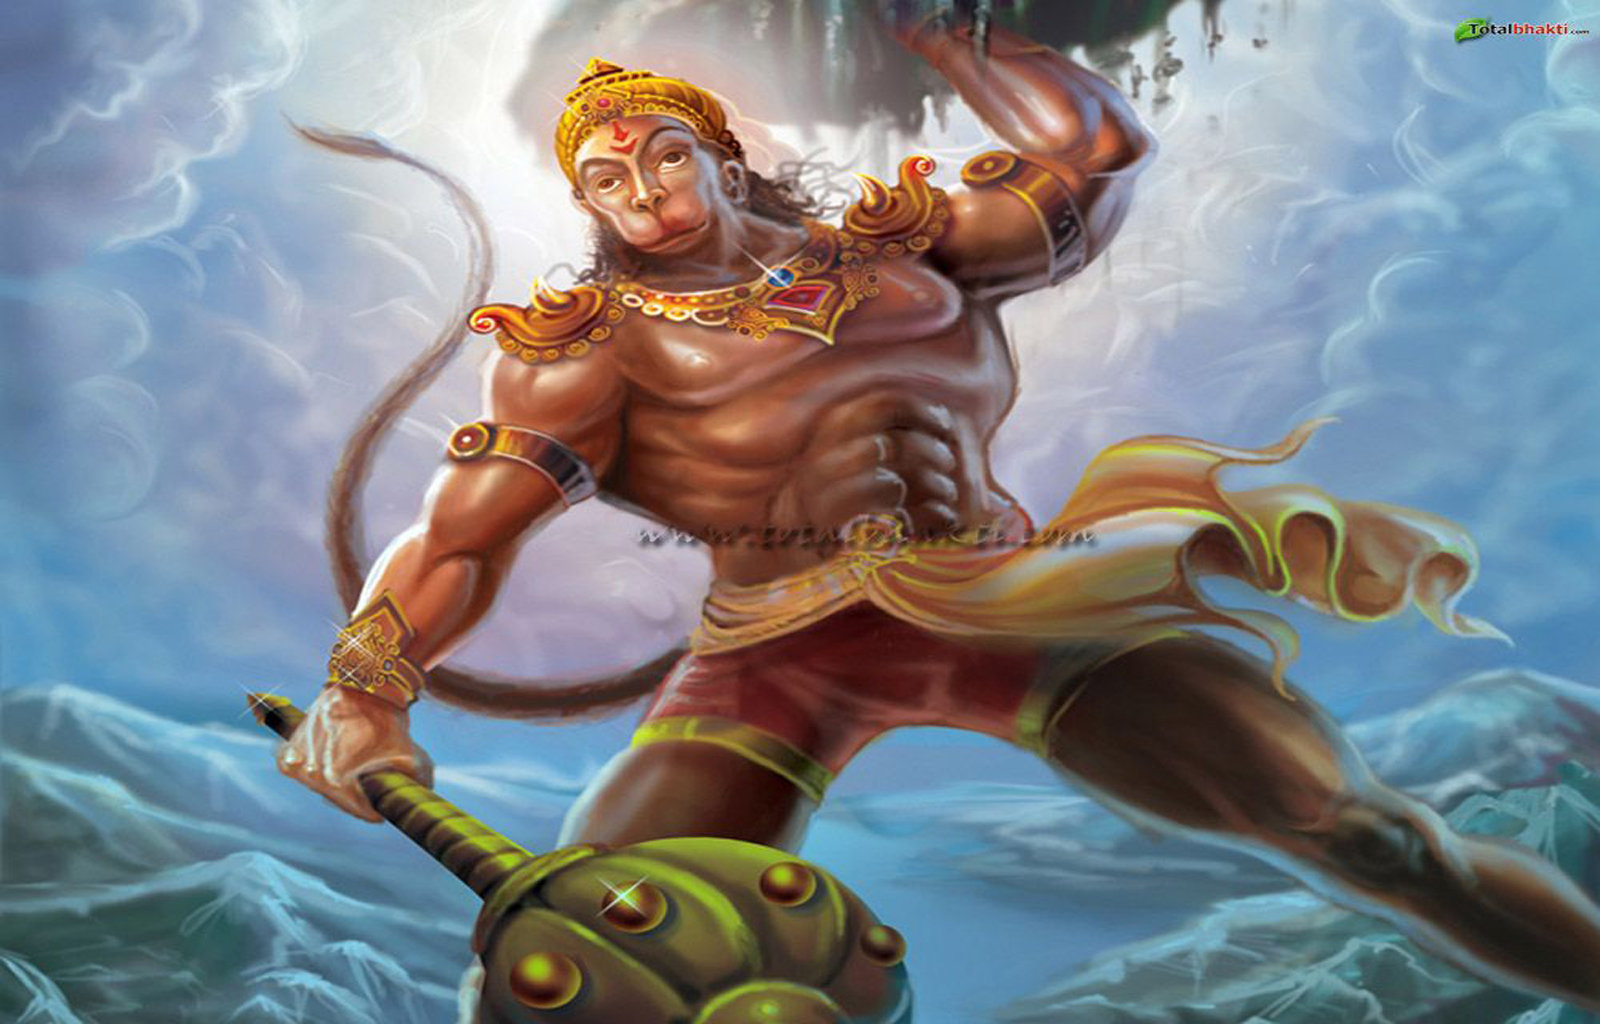 75+] Hanuman Wallpapers - WallpaperSafari